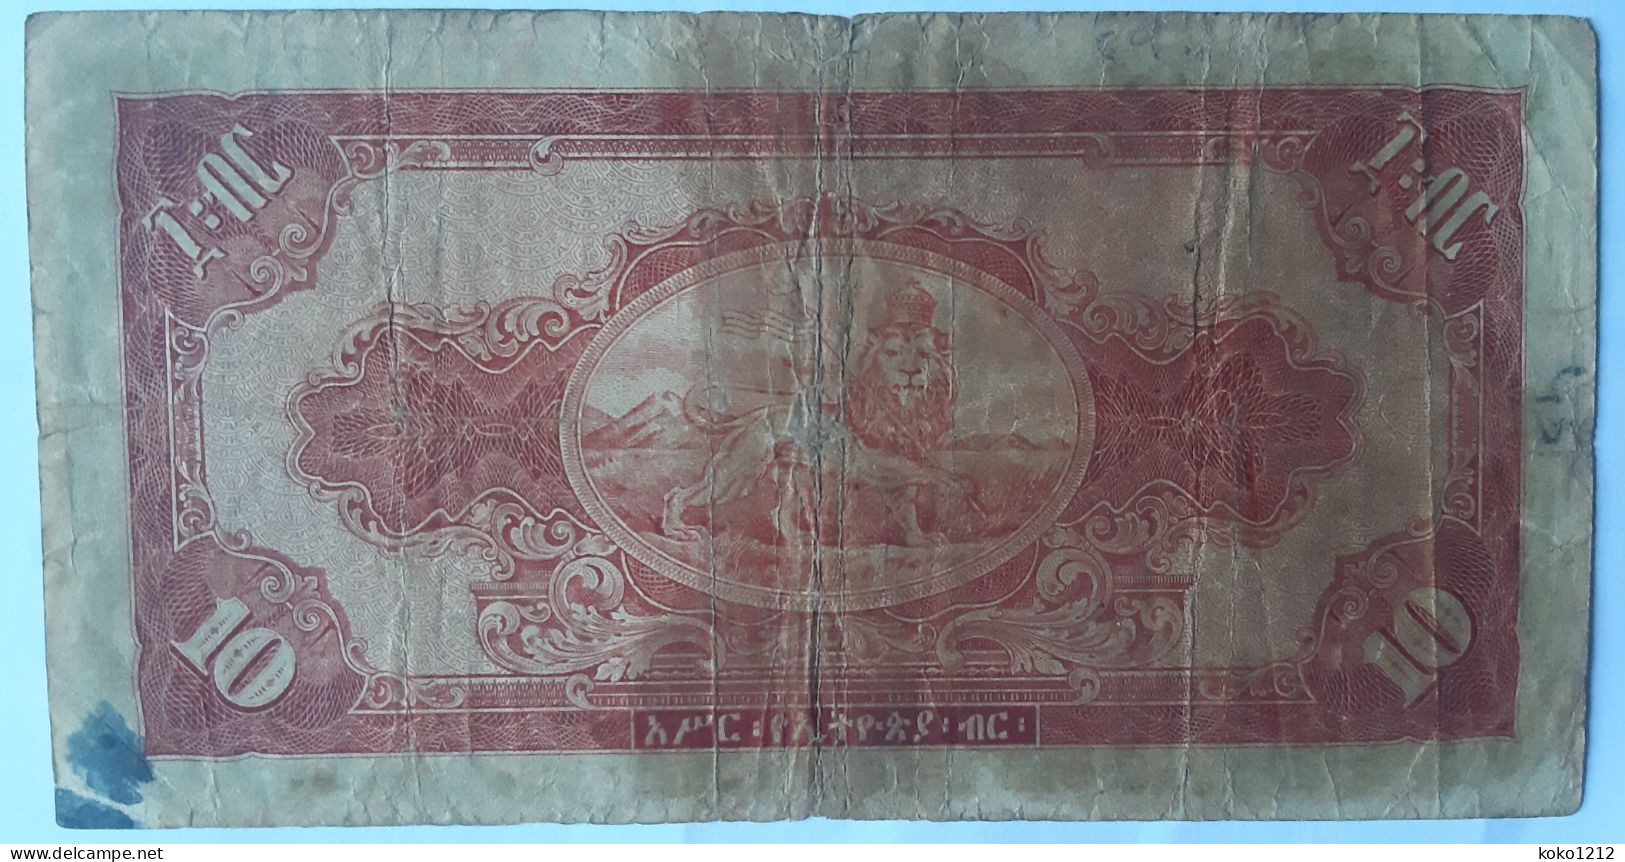 Ethiopia 10 Dollars 1945 P14 VG - Ethiopia